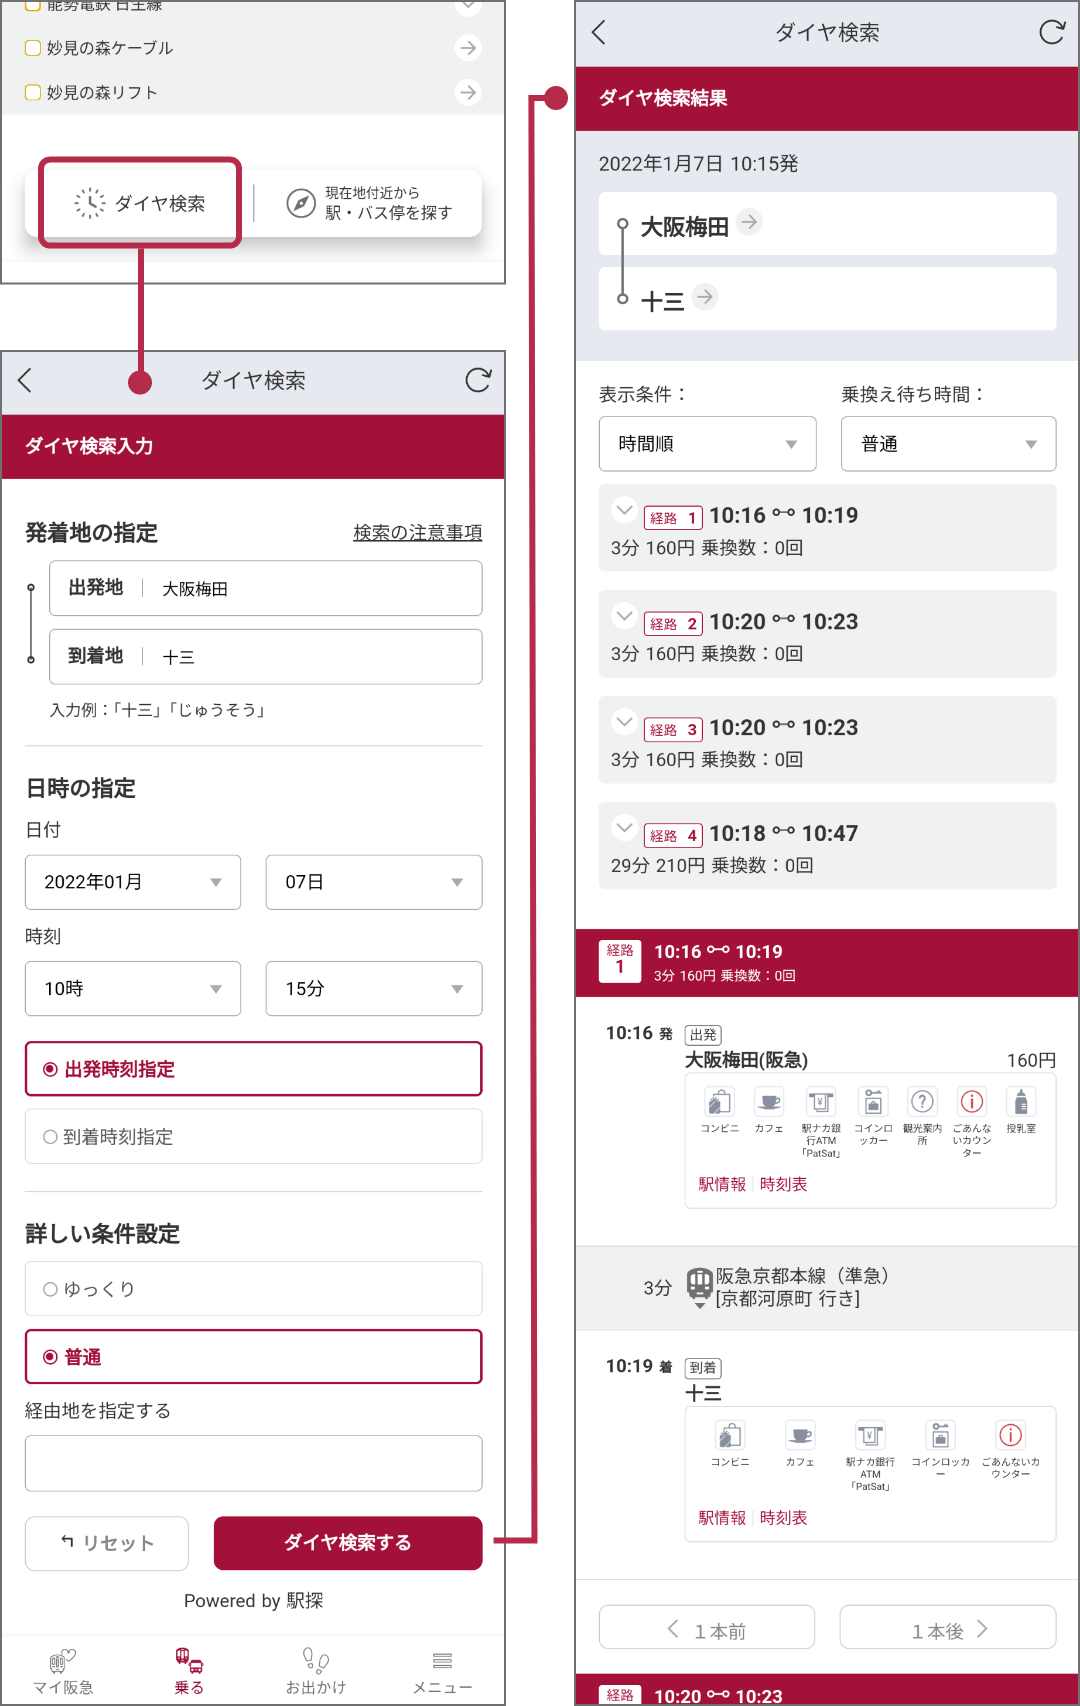 阪急電鉄・能勢電鉄・阪急バスなどのダイヤ検索や駅情報、時刻表などを確認することができます。